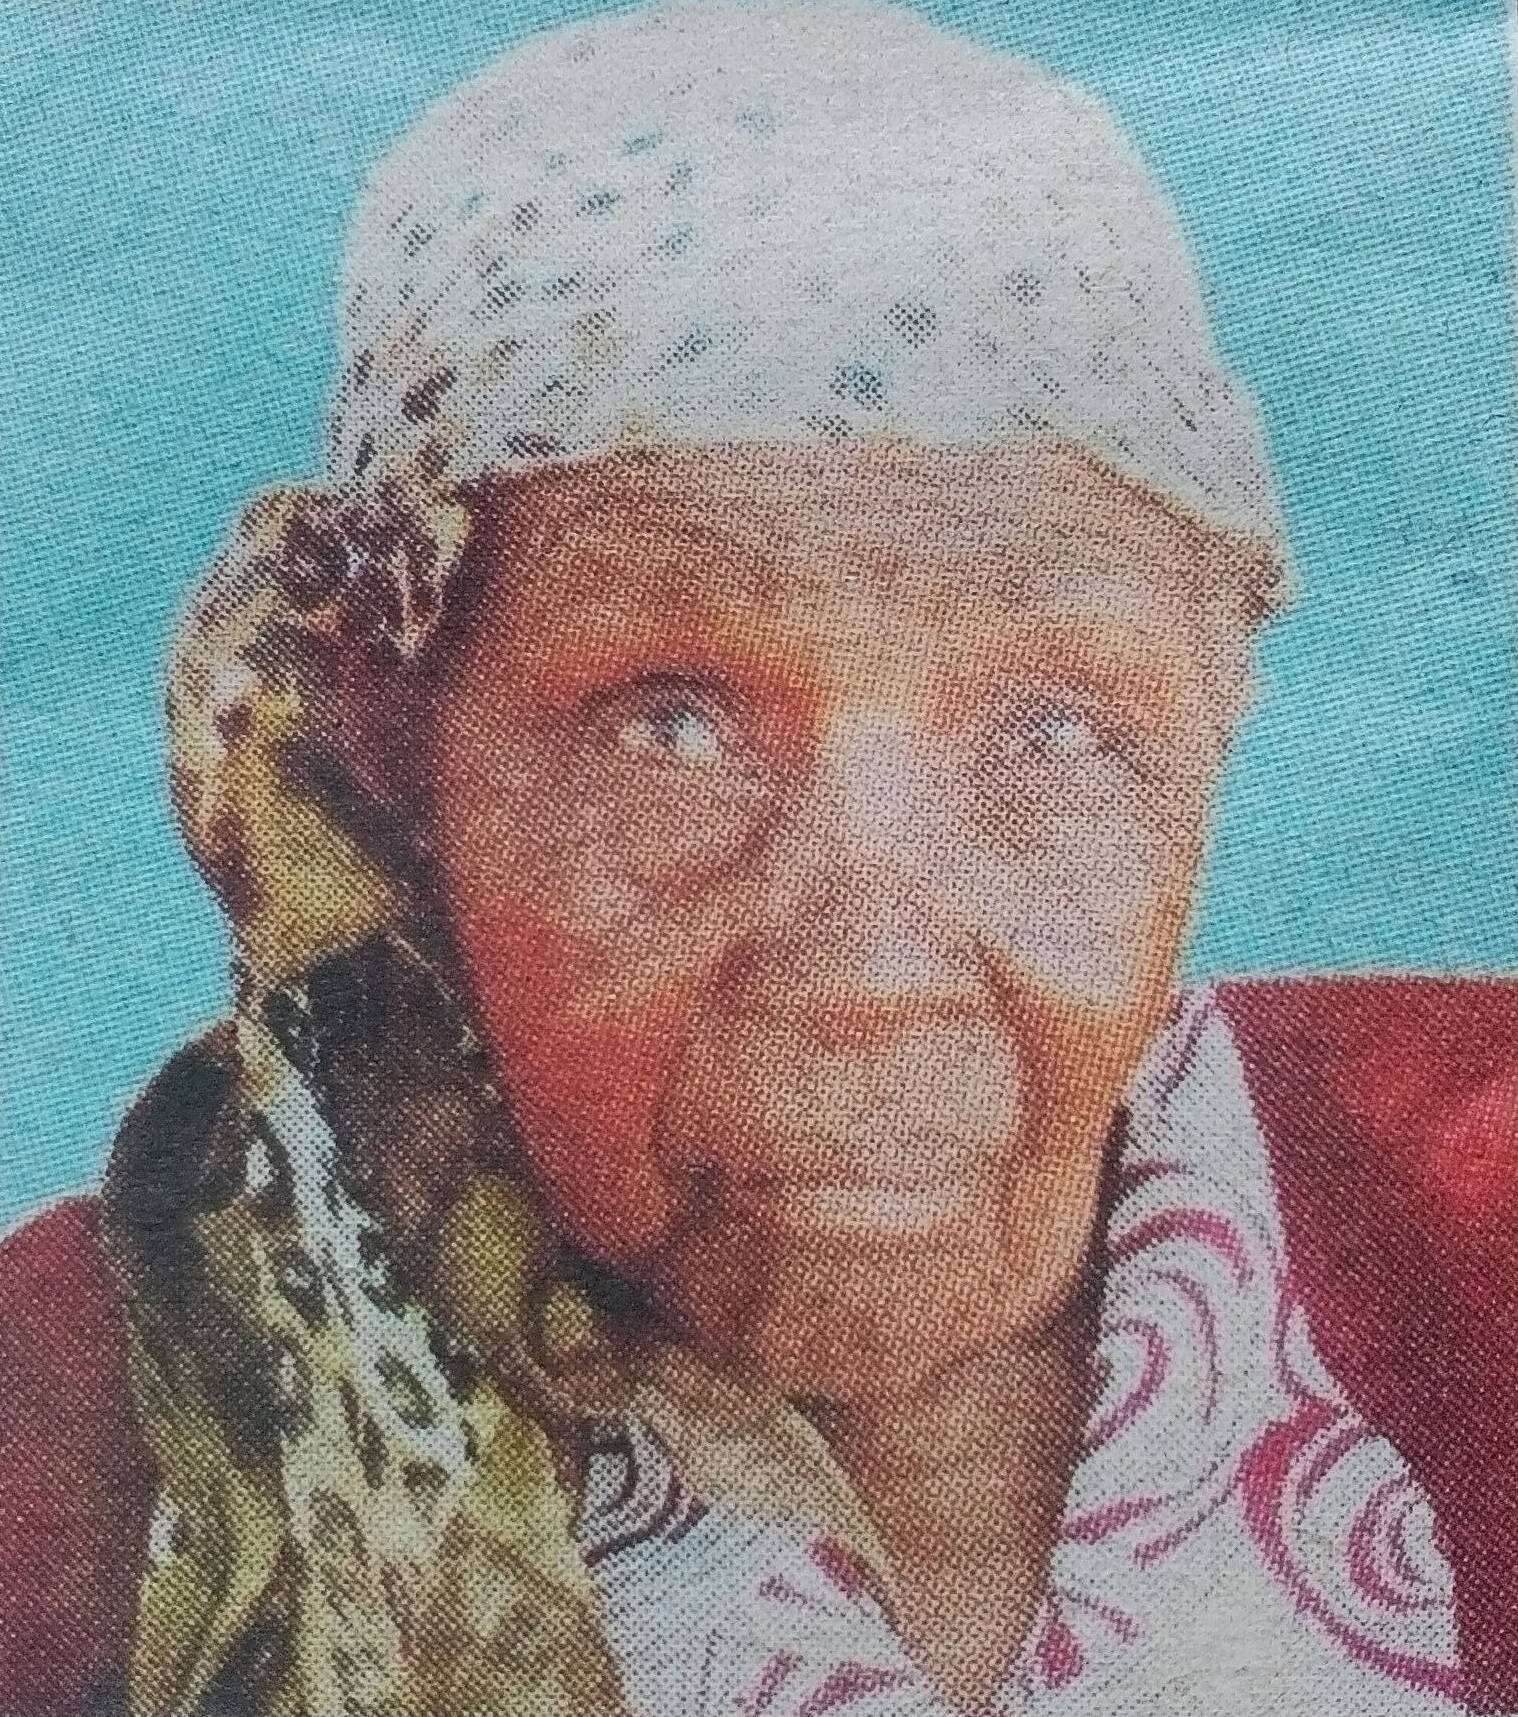 Obituary Image of Susannah Ndungwa Kalia sunrise1921-sunset 2017